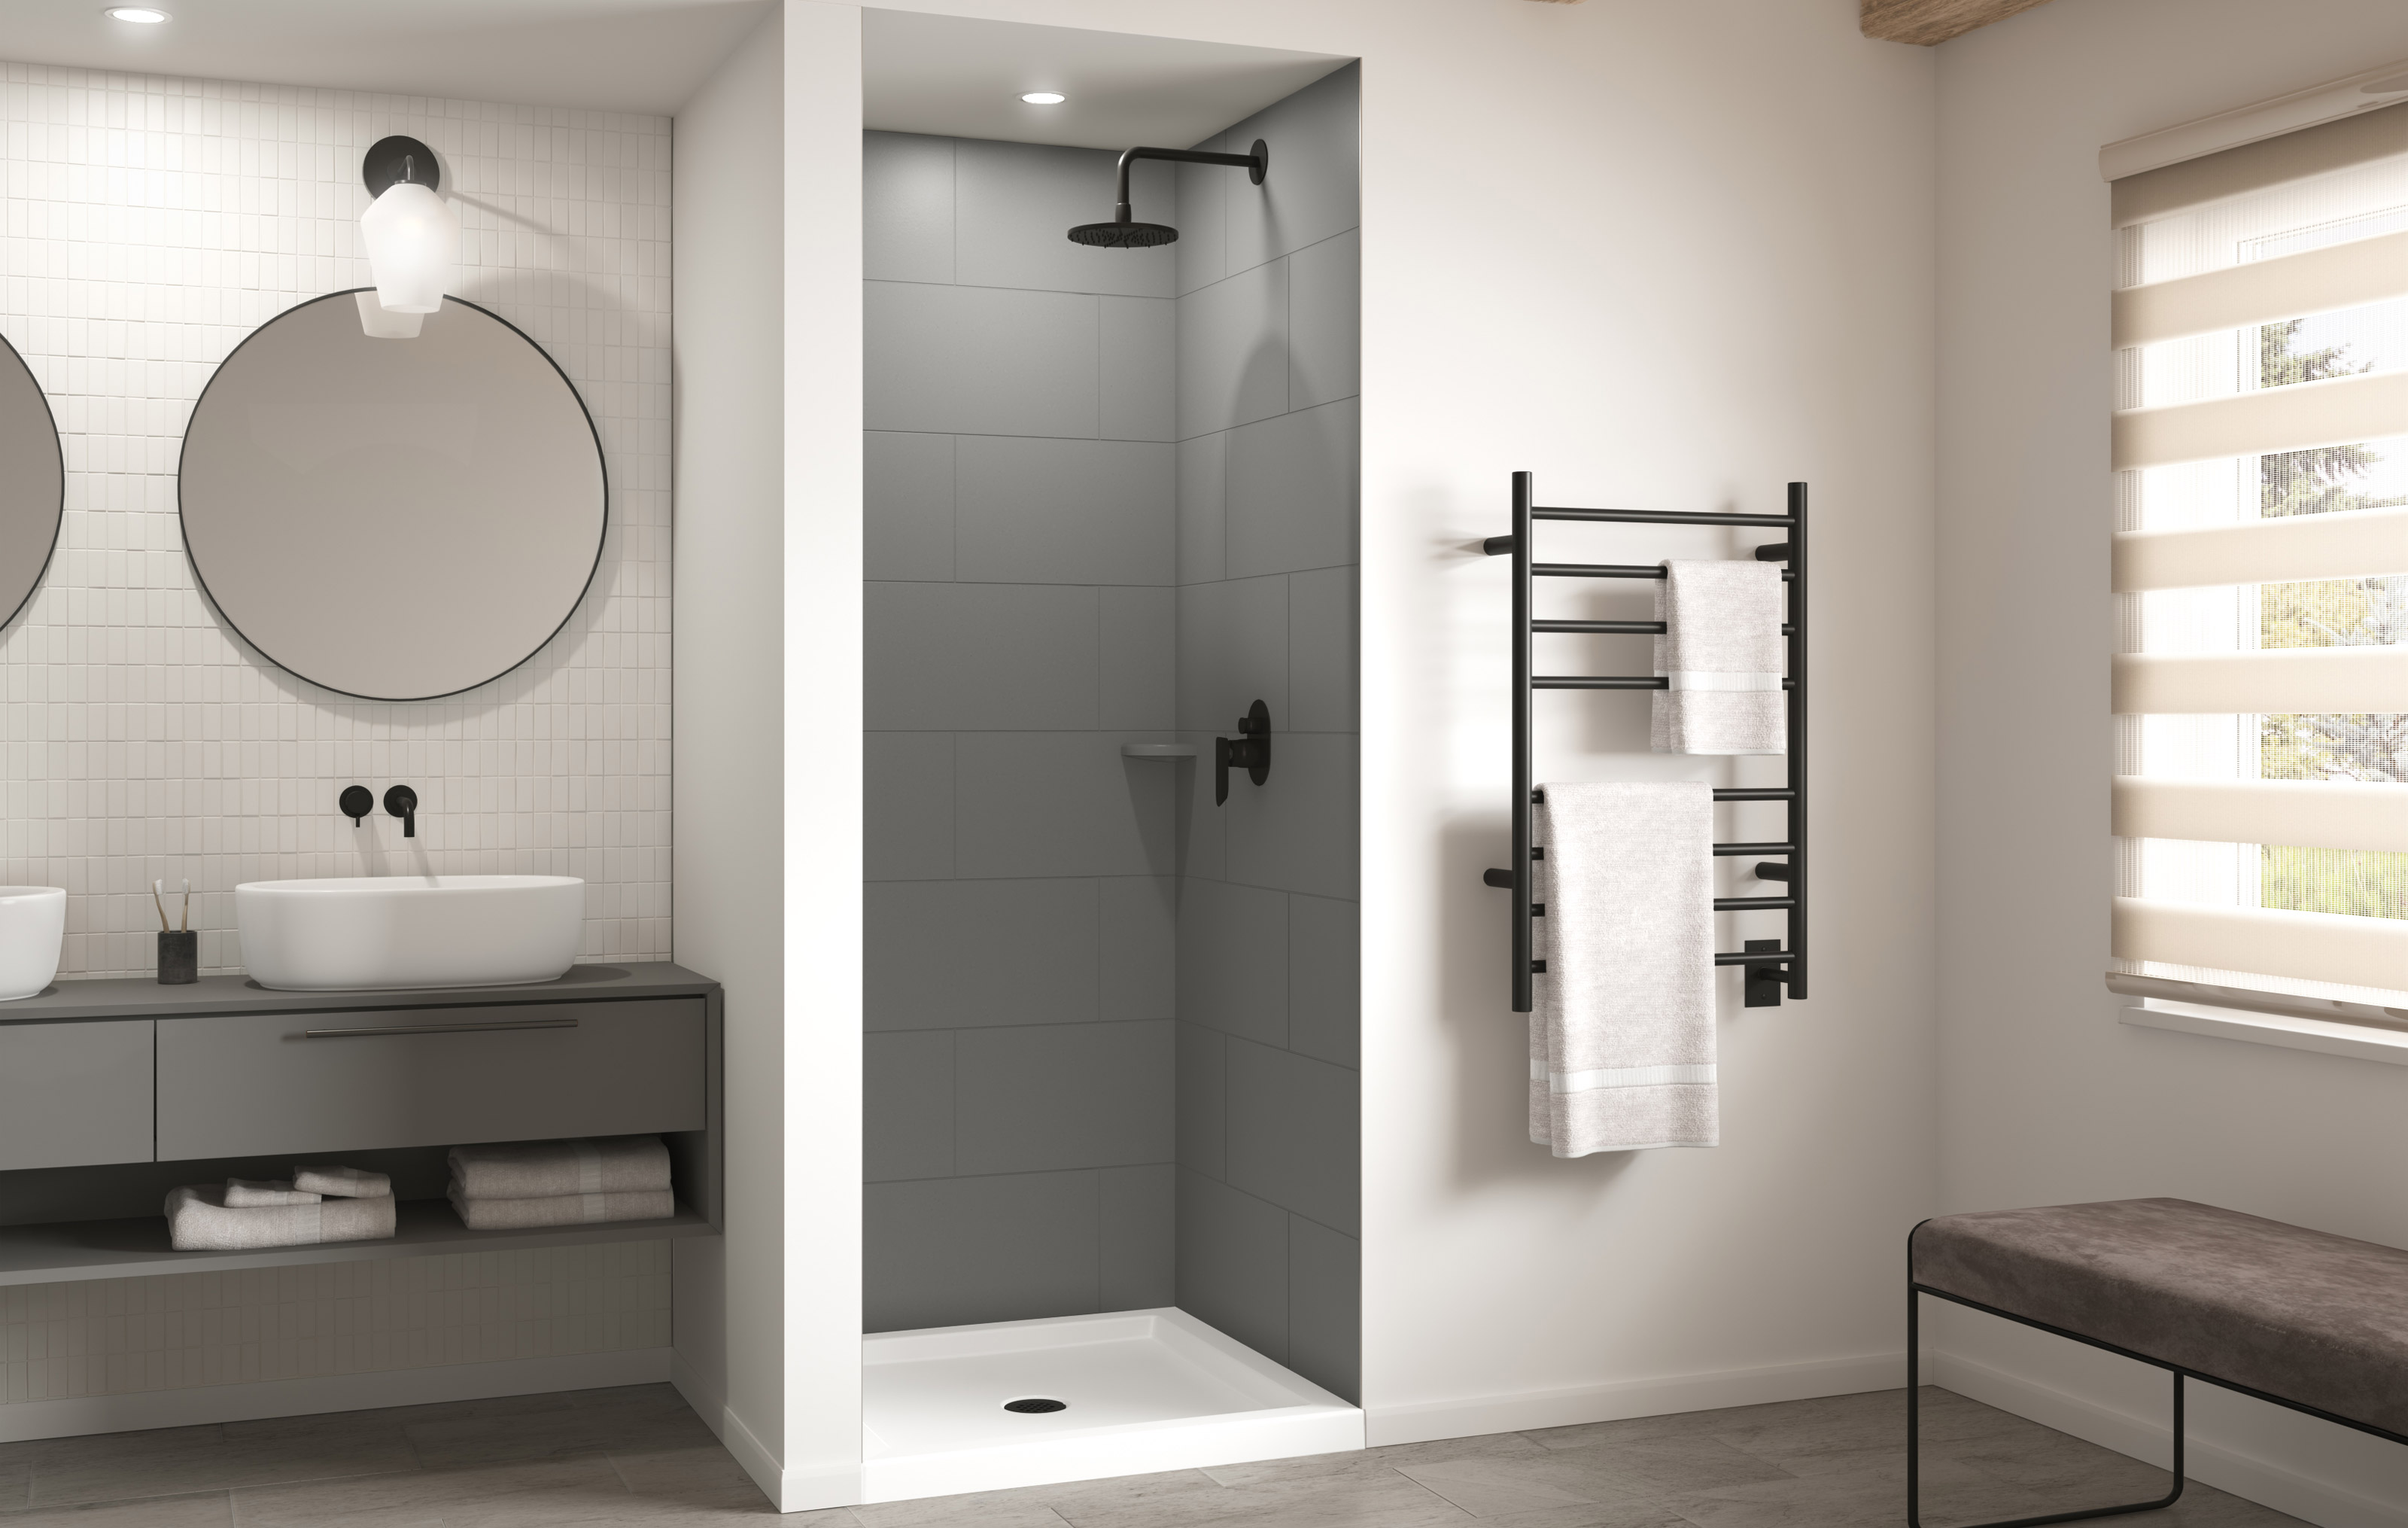 Shower Walls And Panels: Smooth Wall, Subway and Square Tile Bath Wall Kits